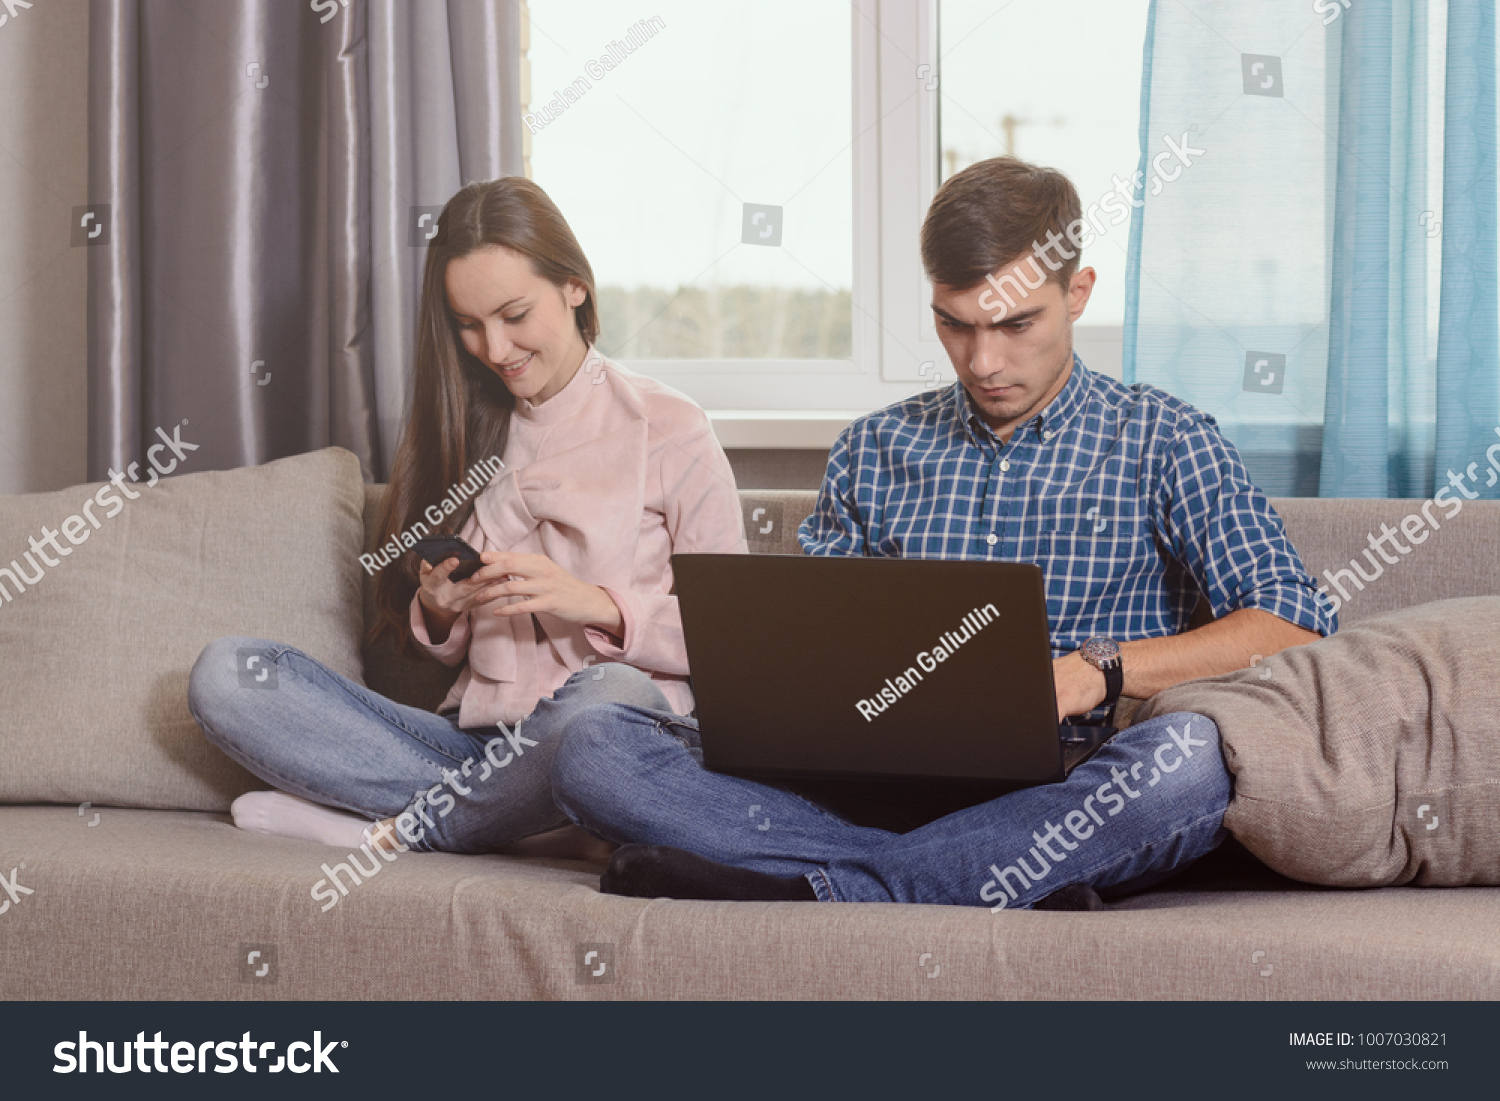 Брат с сестрой сидят на диване